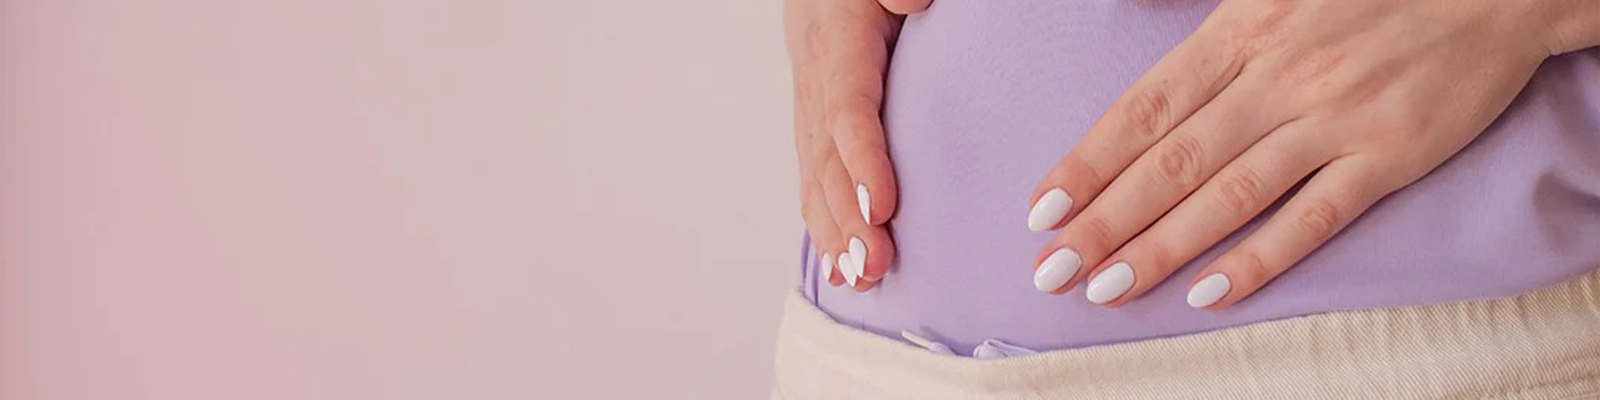 Déni de grossesse et règles : comprendre symptômes et signes